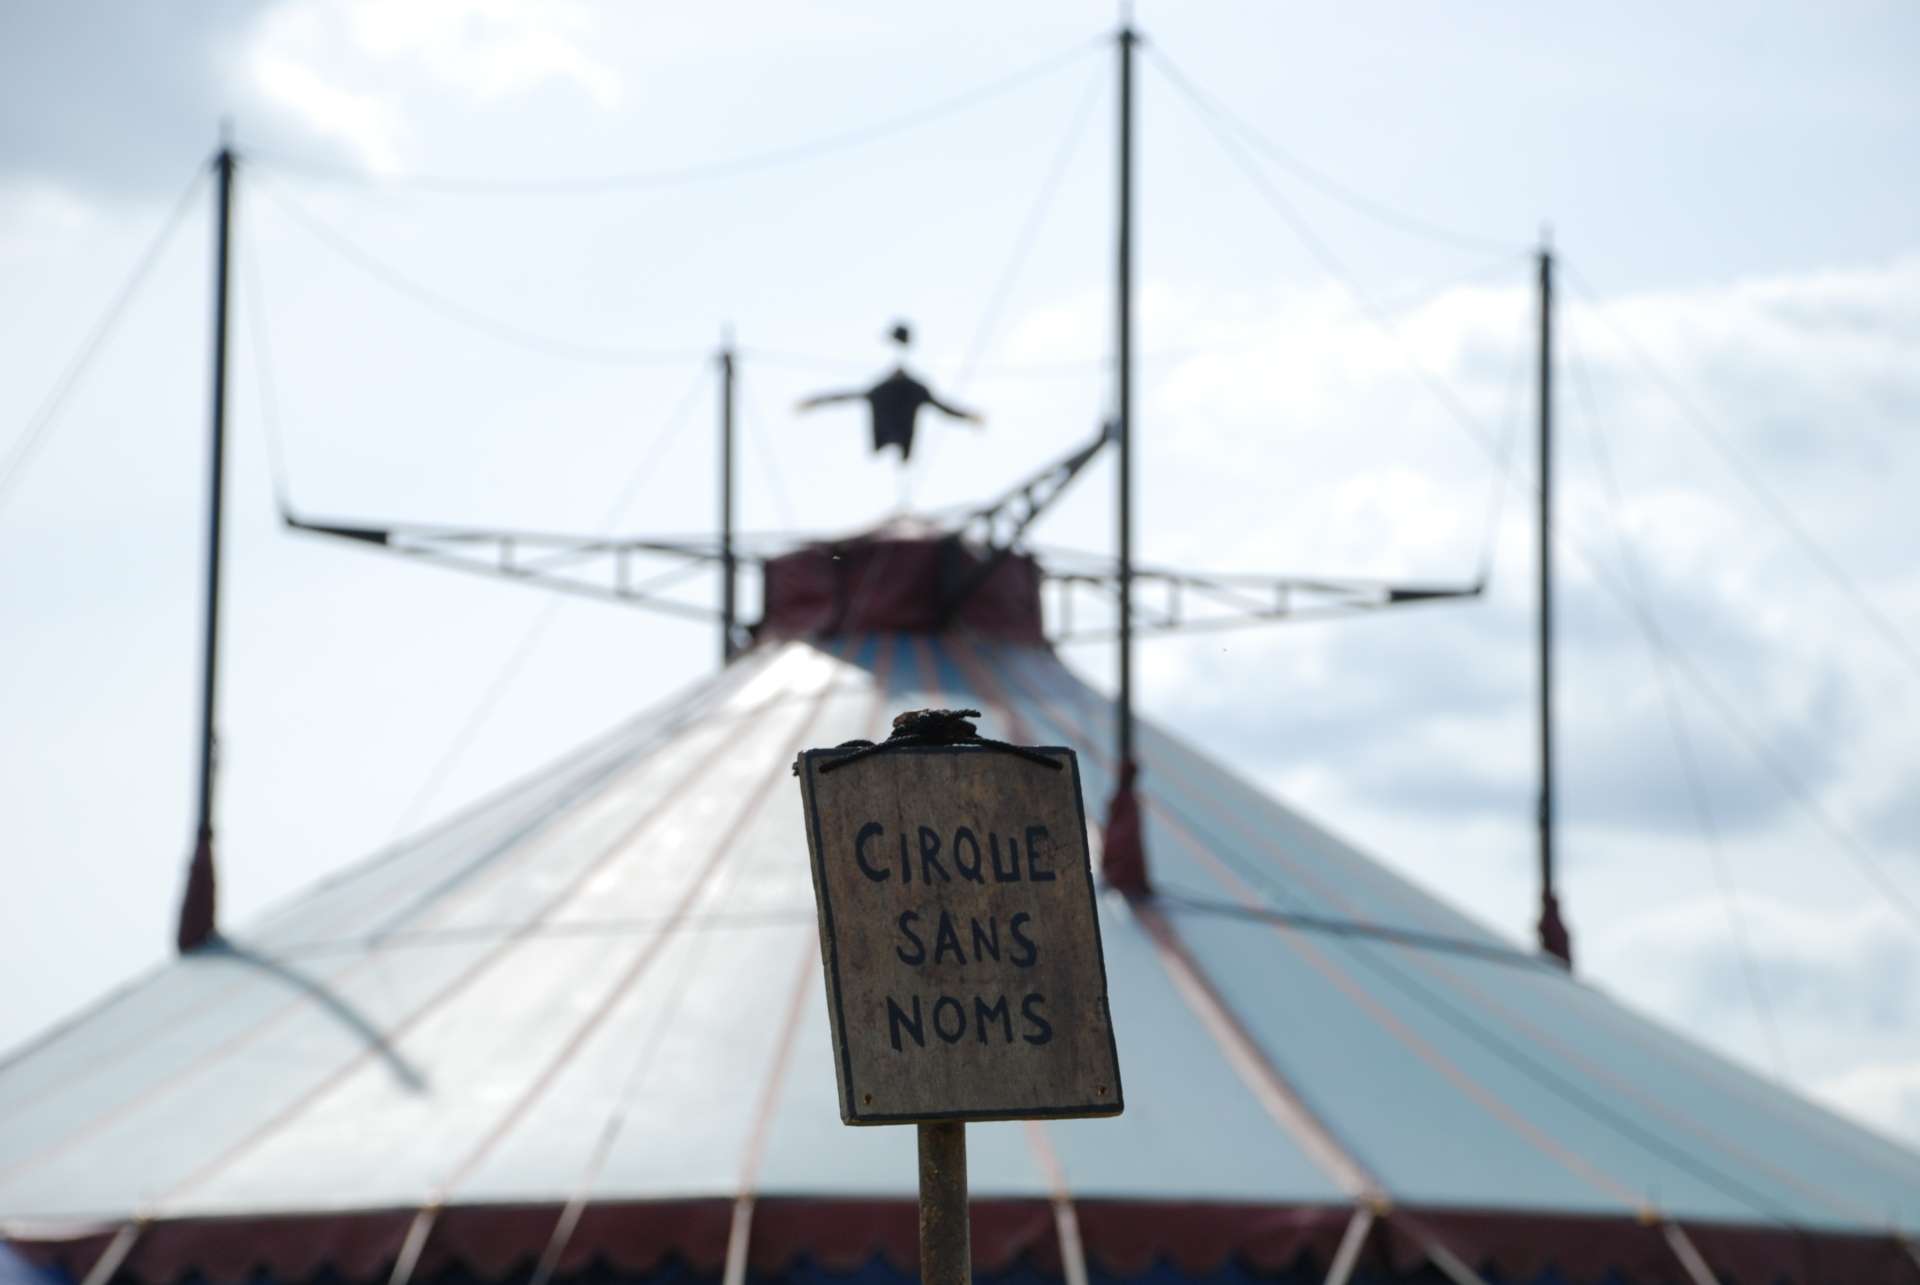 Le chapiteau du Cirque sans noms